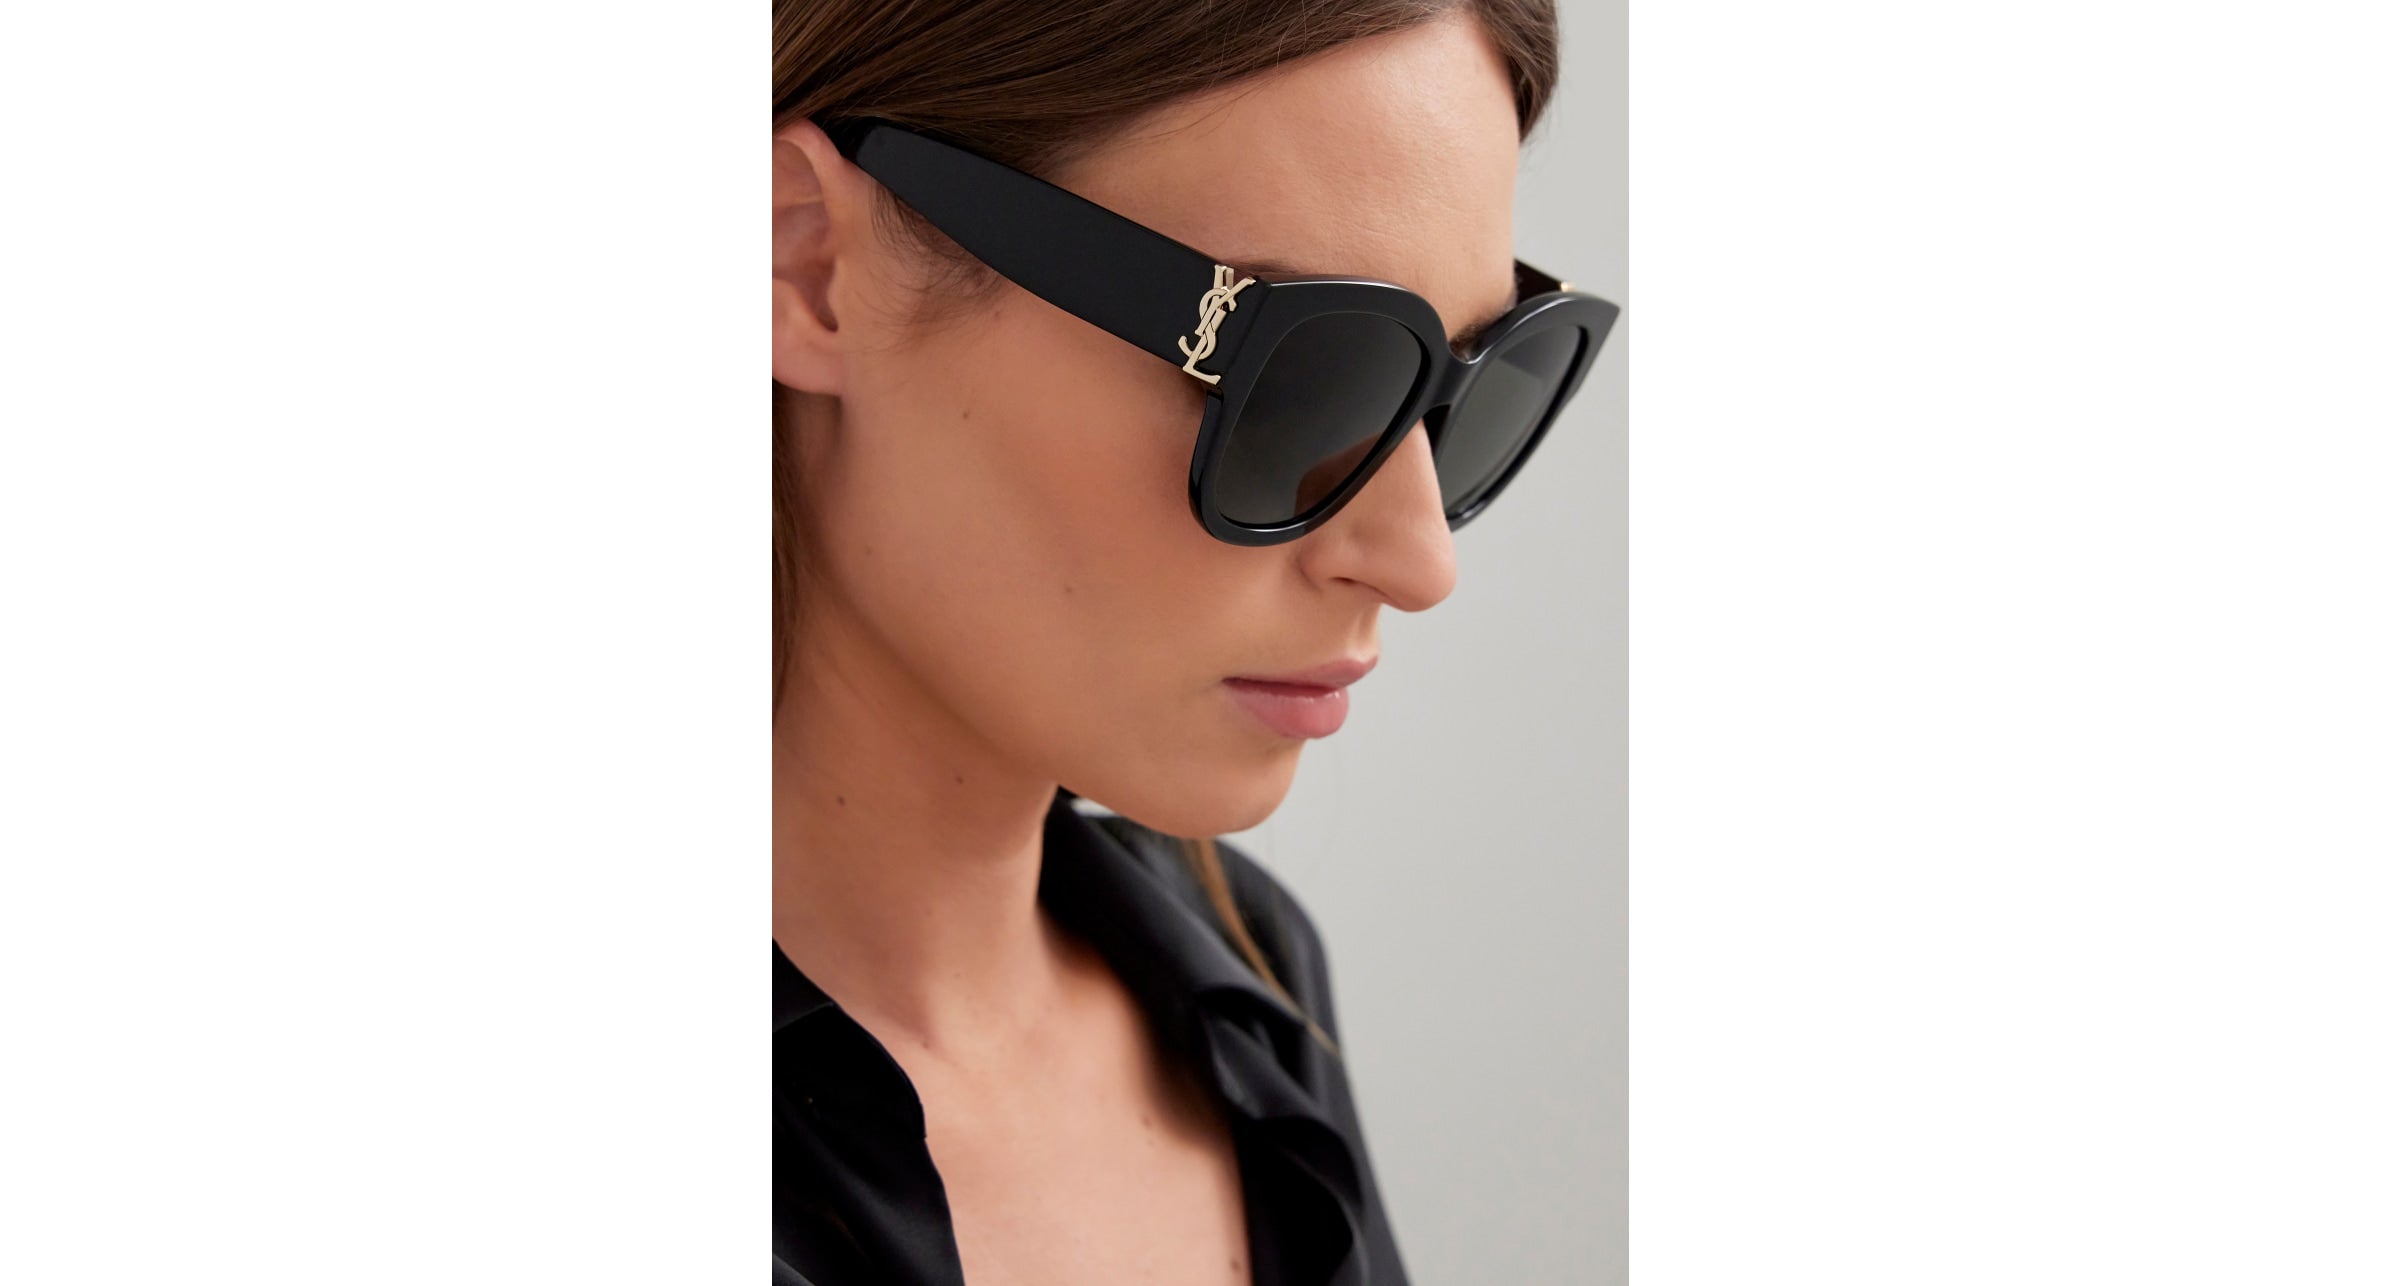 Saint Laurent Women's SL M95/F Cat Eye Sunglasses